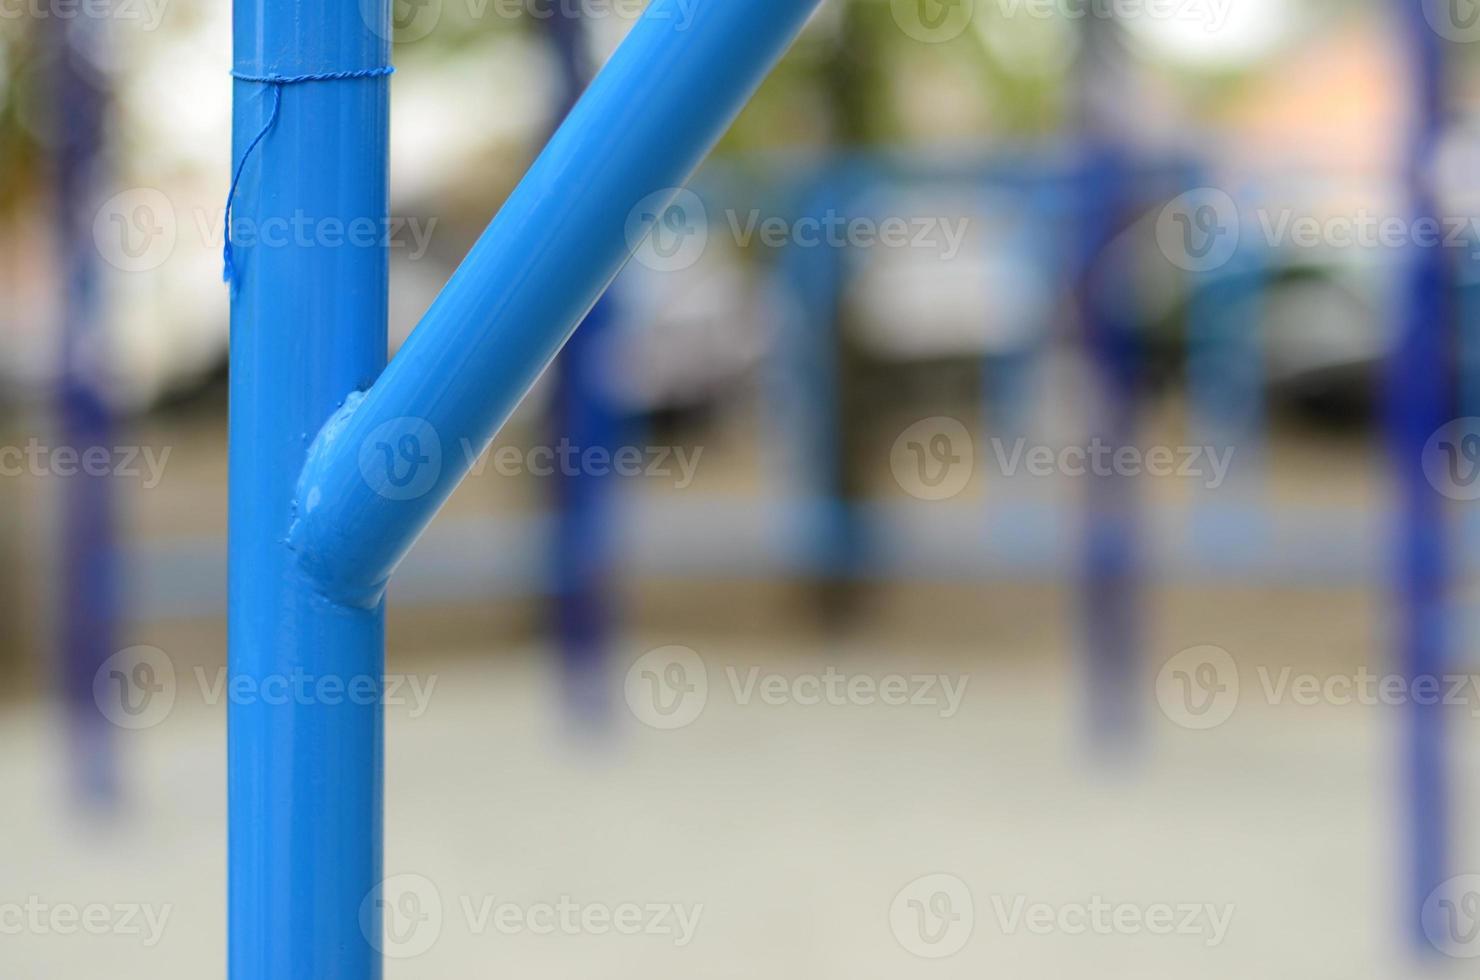 tubos de metal azul y barras transversales contra un campo de deportes callejeros para entrenar en atletismo. equipo de gimnasia atlética al aire libre. foto macro con enfoque selectivo y fondo extremadamente borroso